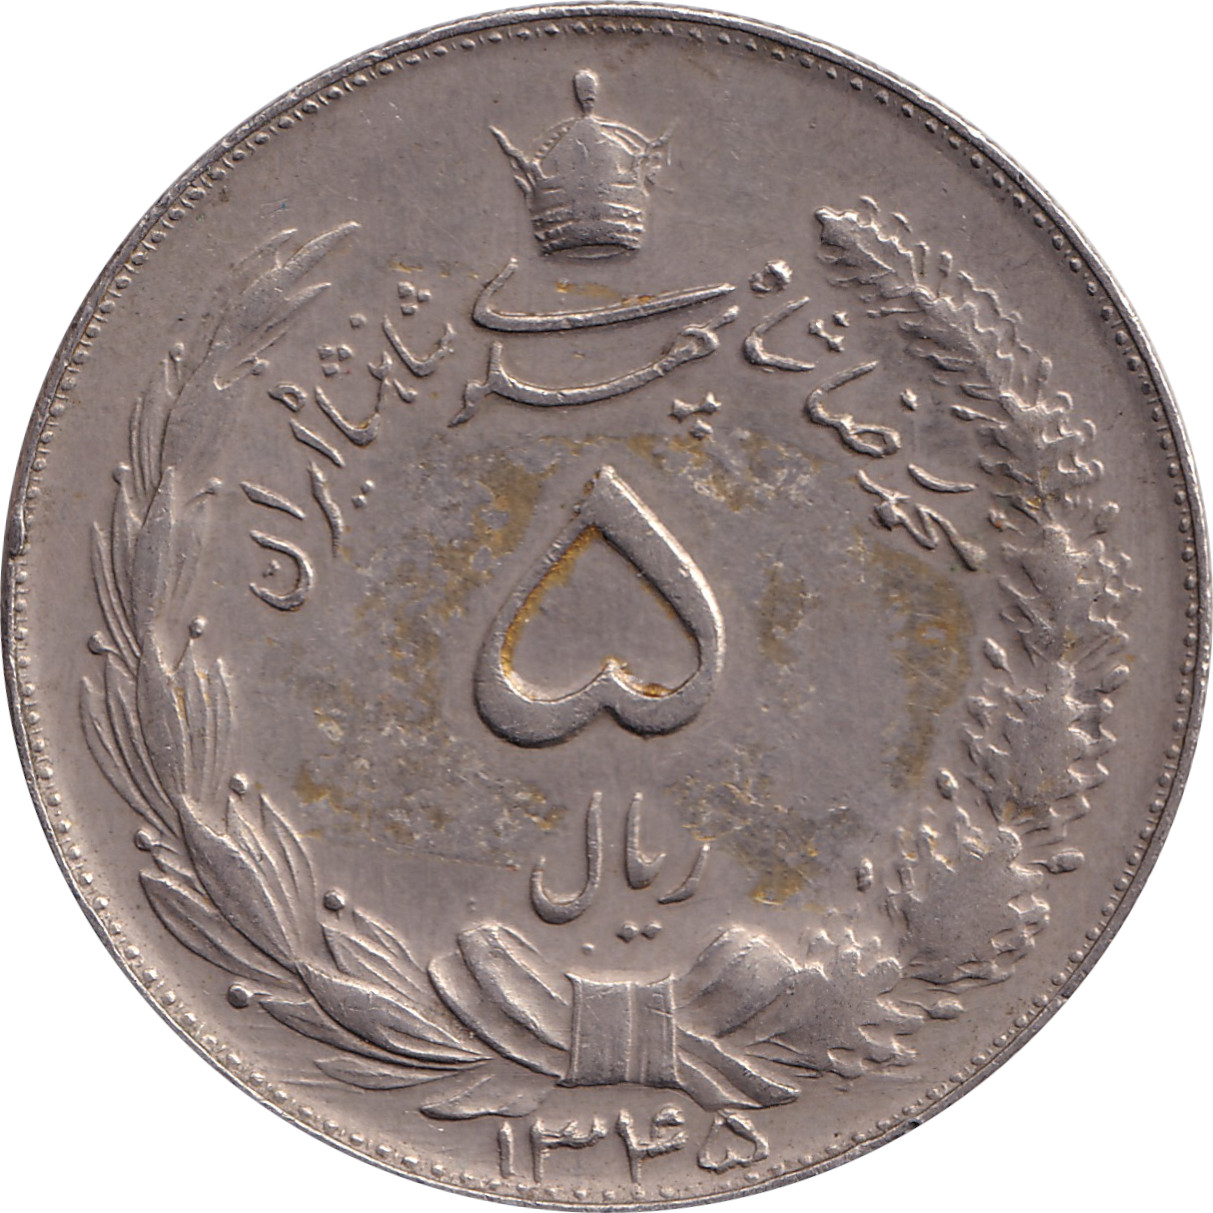 5 rials - Muhammad Reza Pahlavi